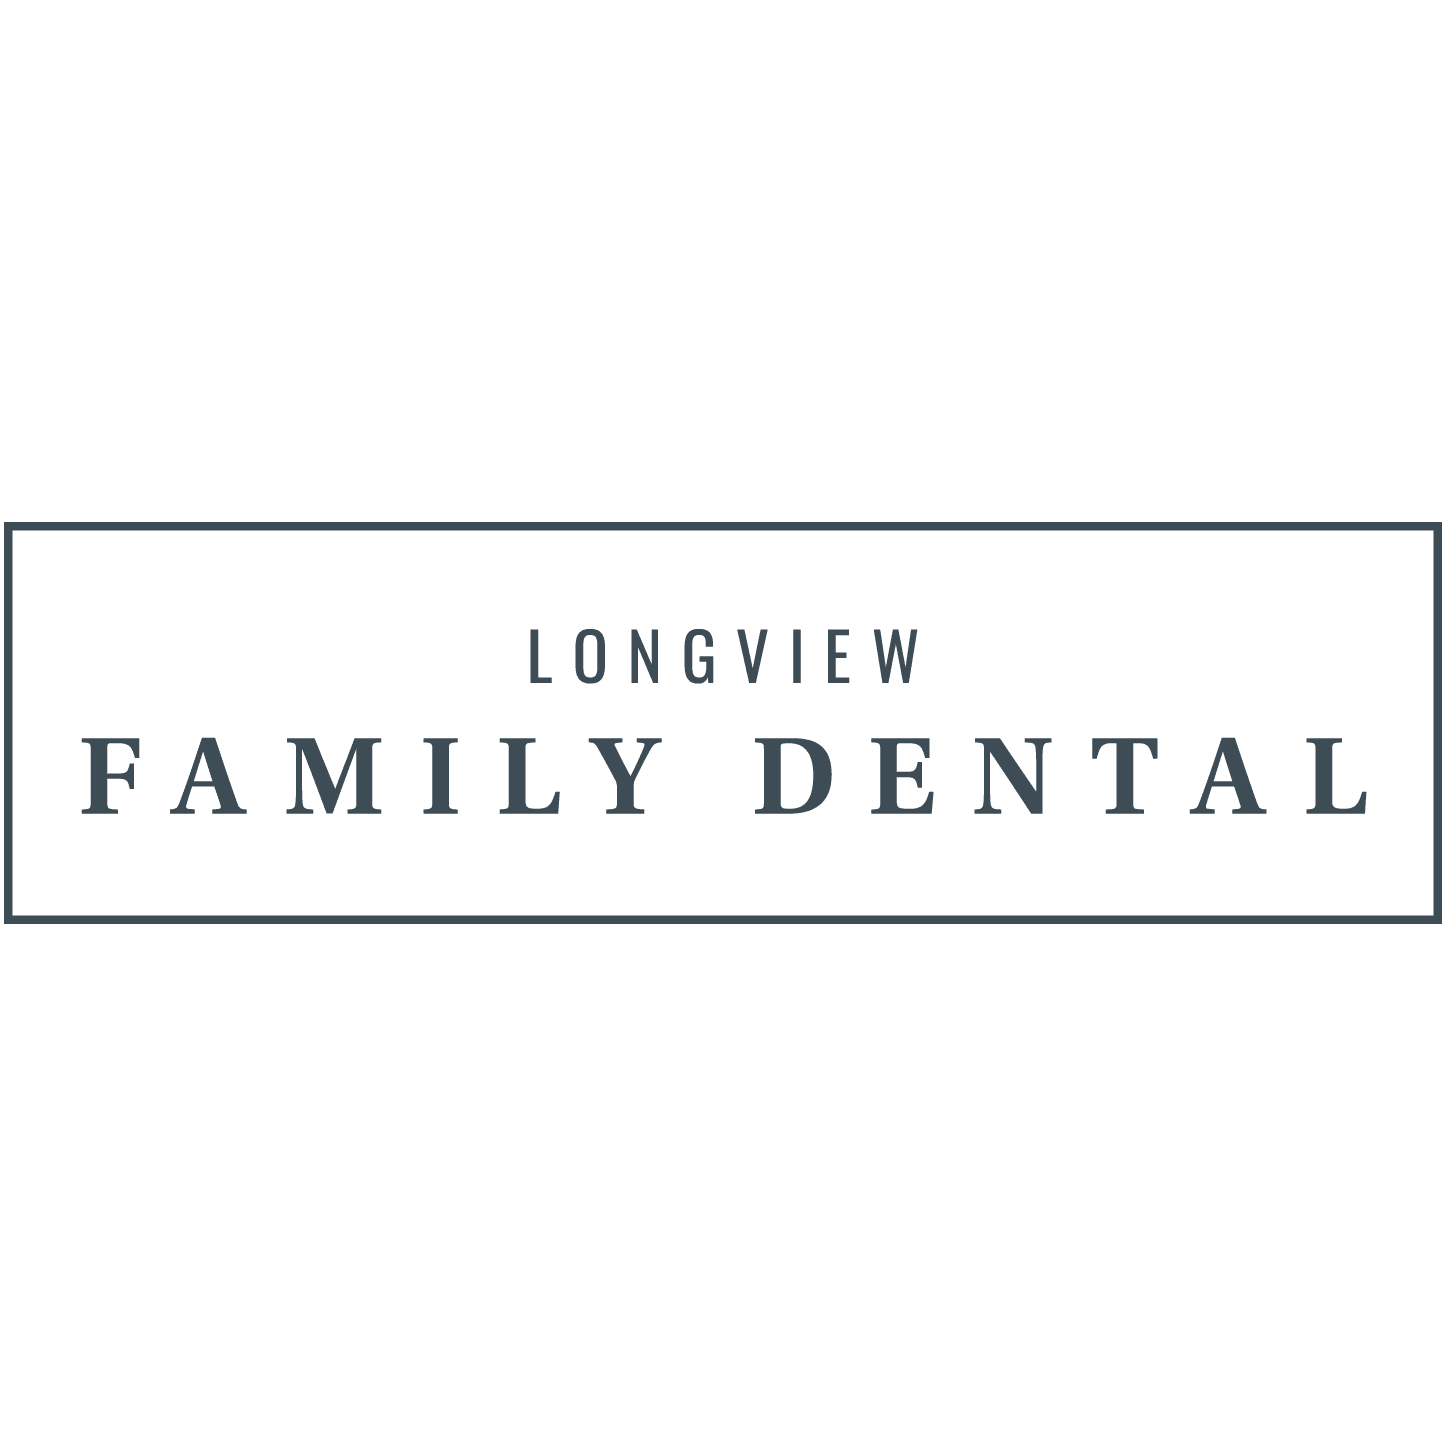 Longview Family Dental - Longview, TX 75605 - (903)759-0765 | ShowMeLocal.com